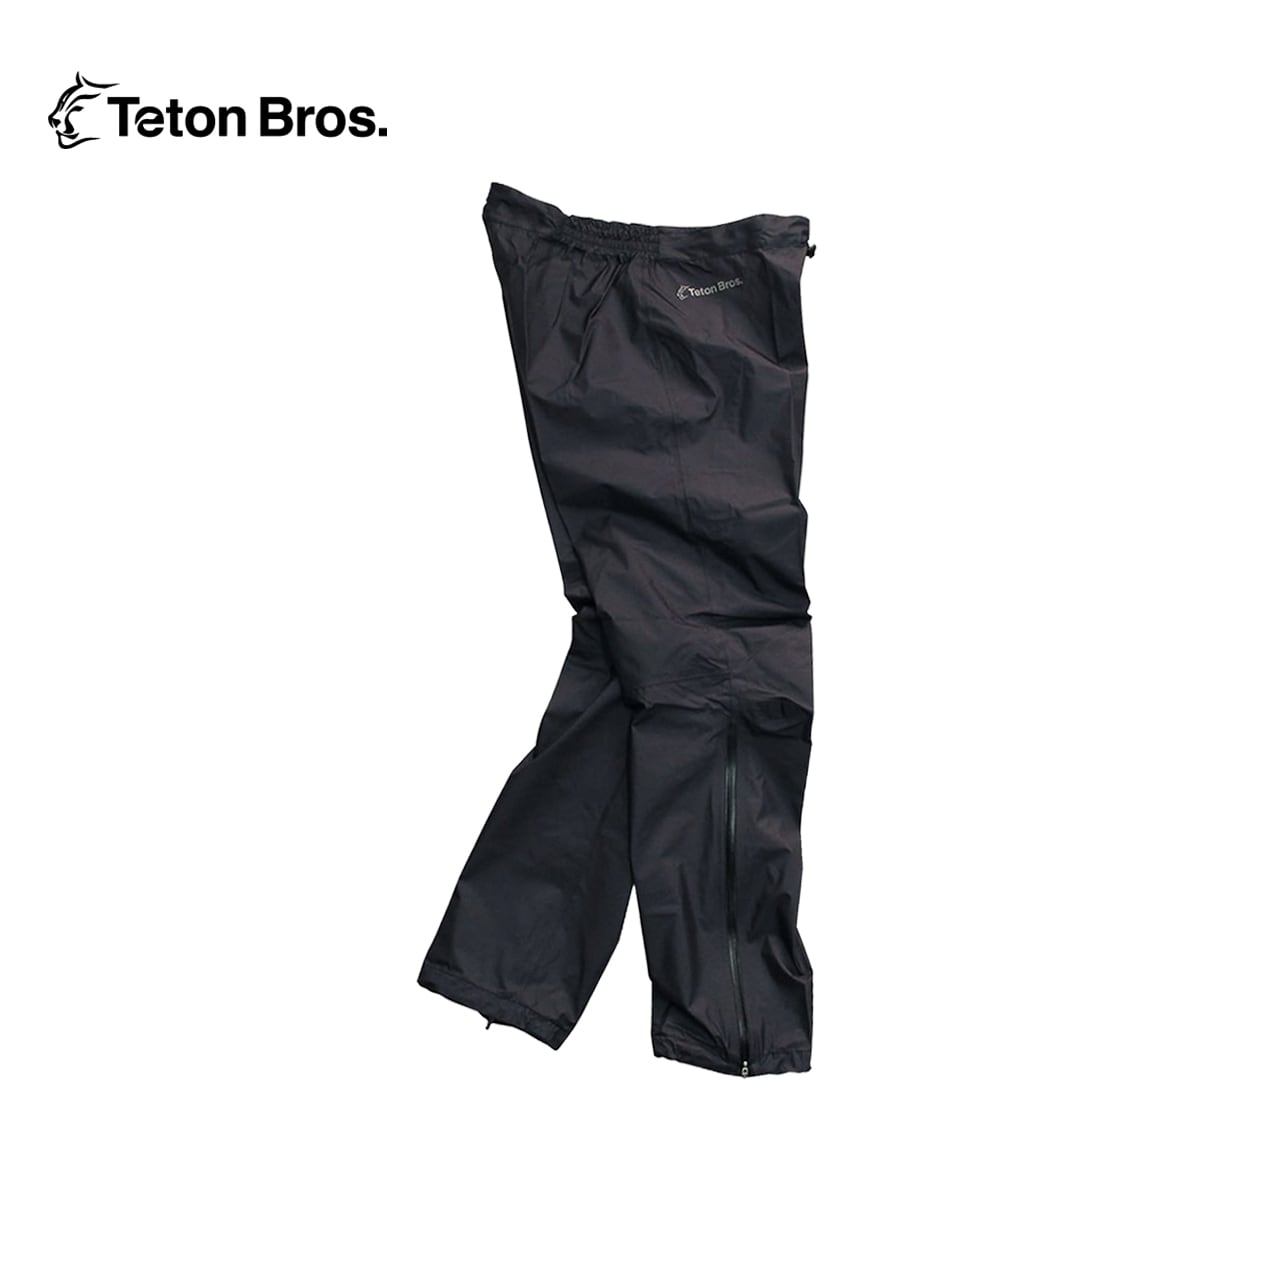 Teton Bros. Feather Rain Pant Unisex | WORKROWN UNIFORM